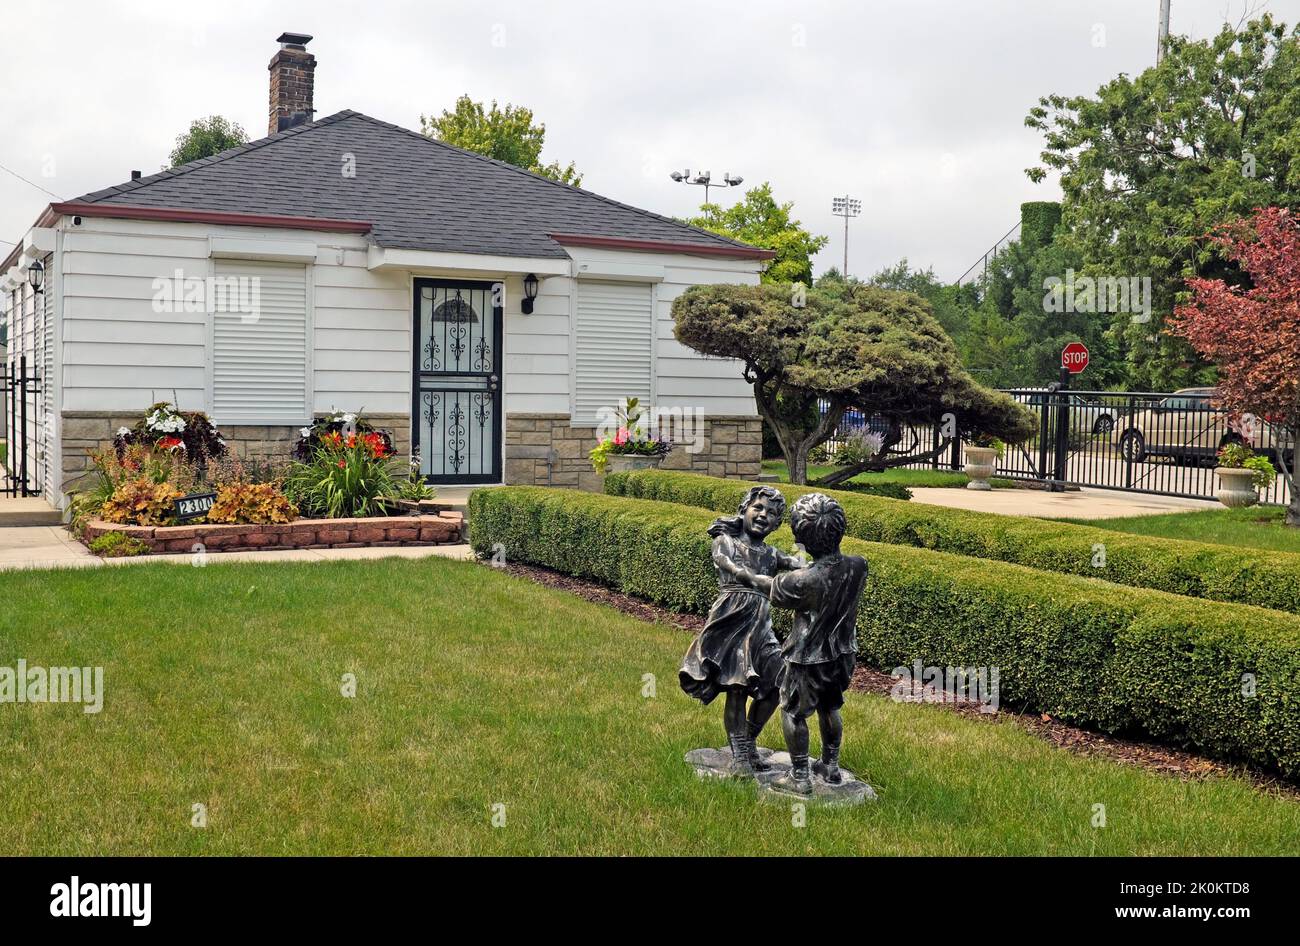 La casa d'infanzia di Michael Jackson al 2300 Jackson Street a Gary, Indiana, è diventata un luogo di omaggio per il cantante tardivo. Foto Stock